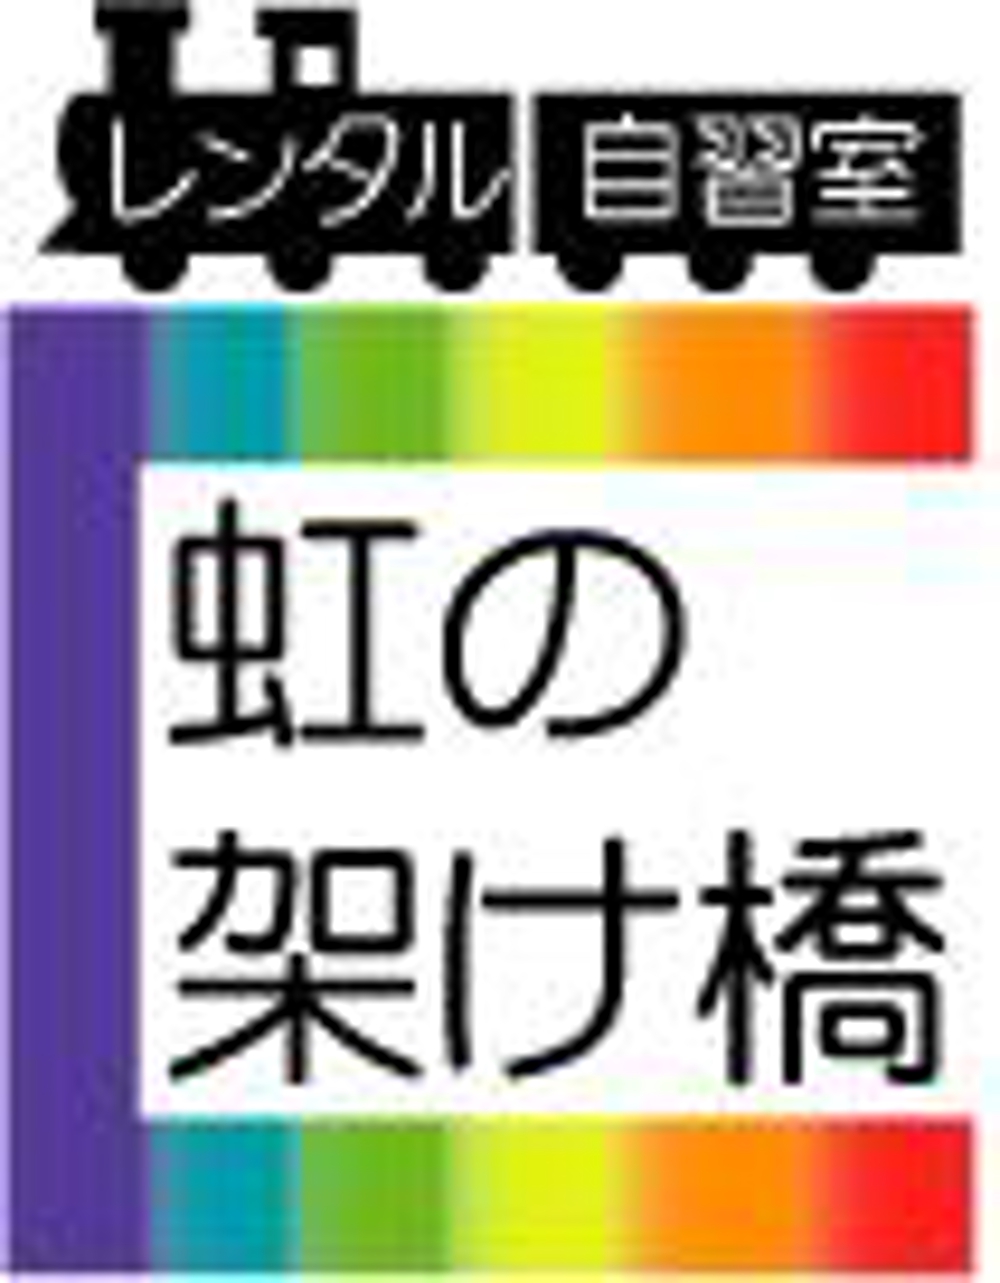 虹の架け橋.jpg